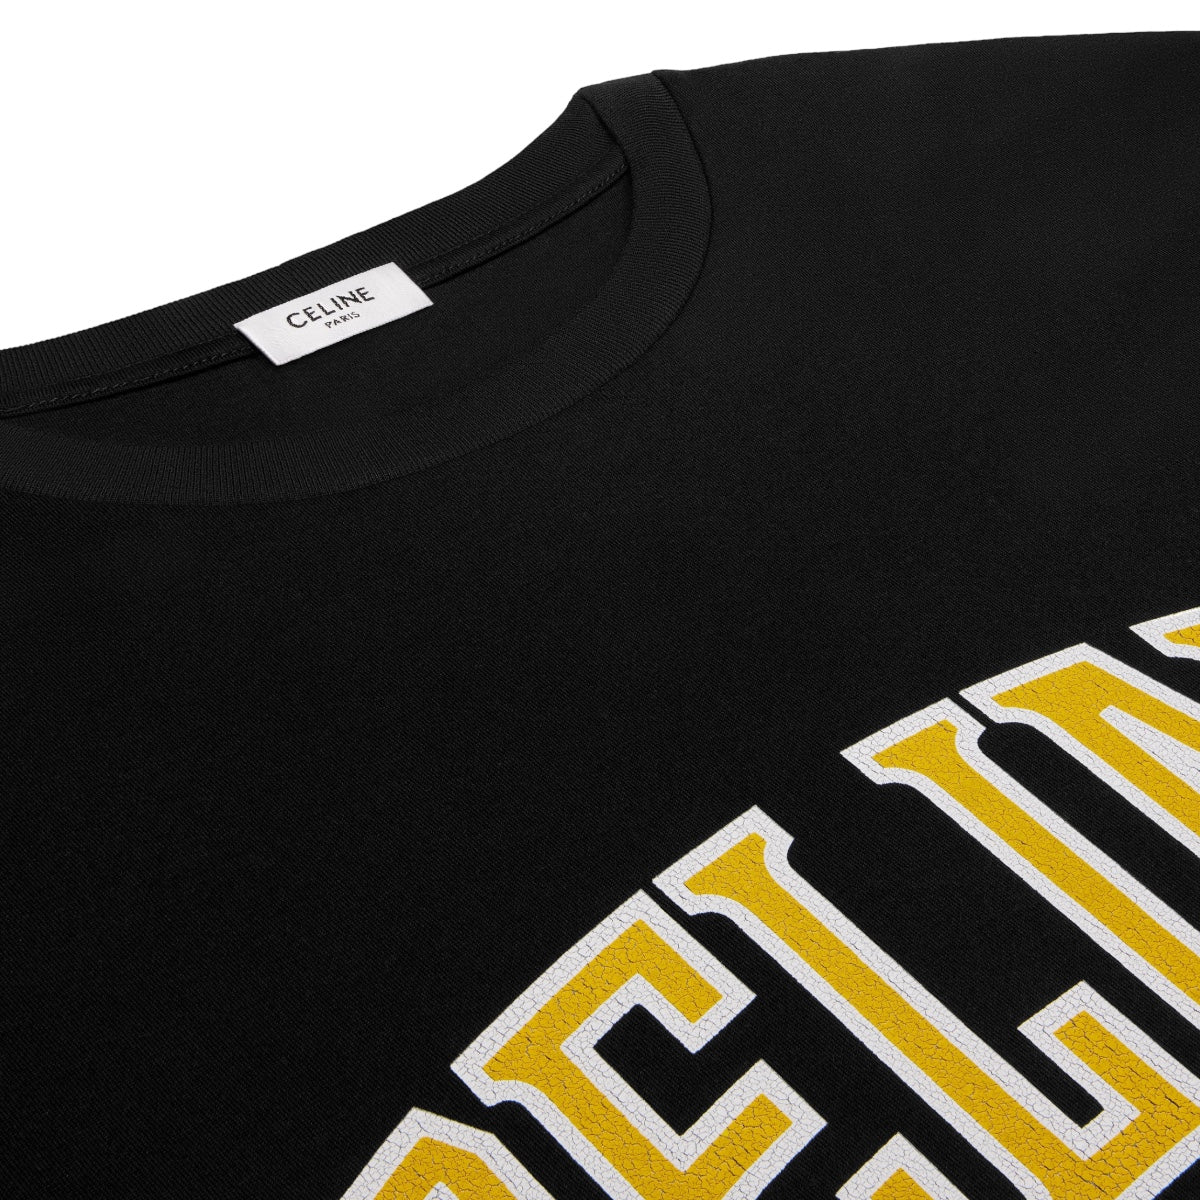 Celine - University logo T-shirt black